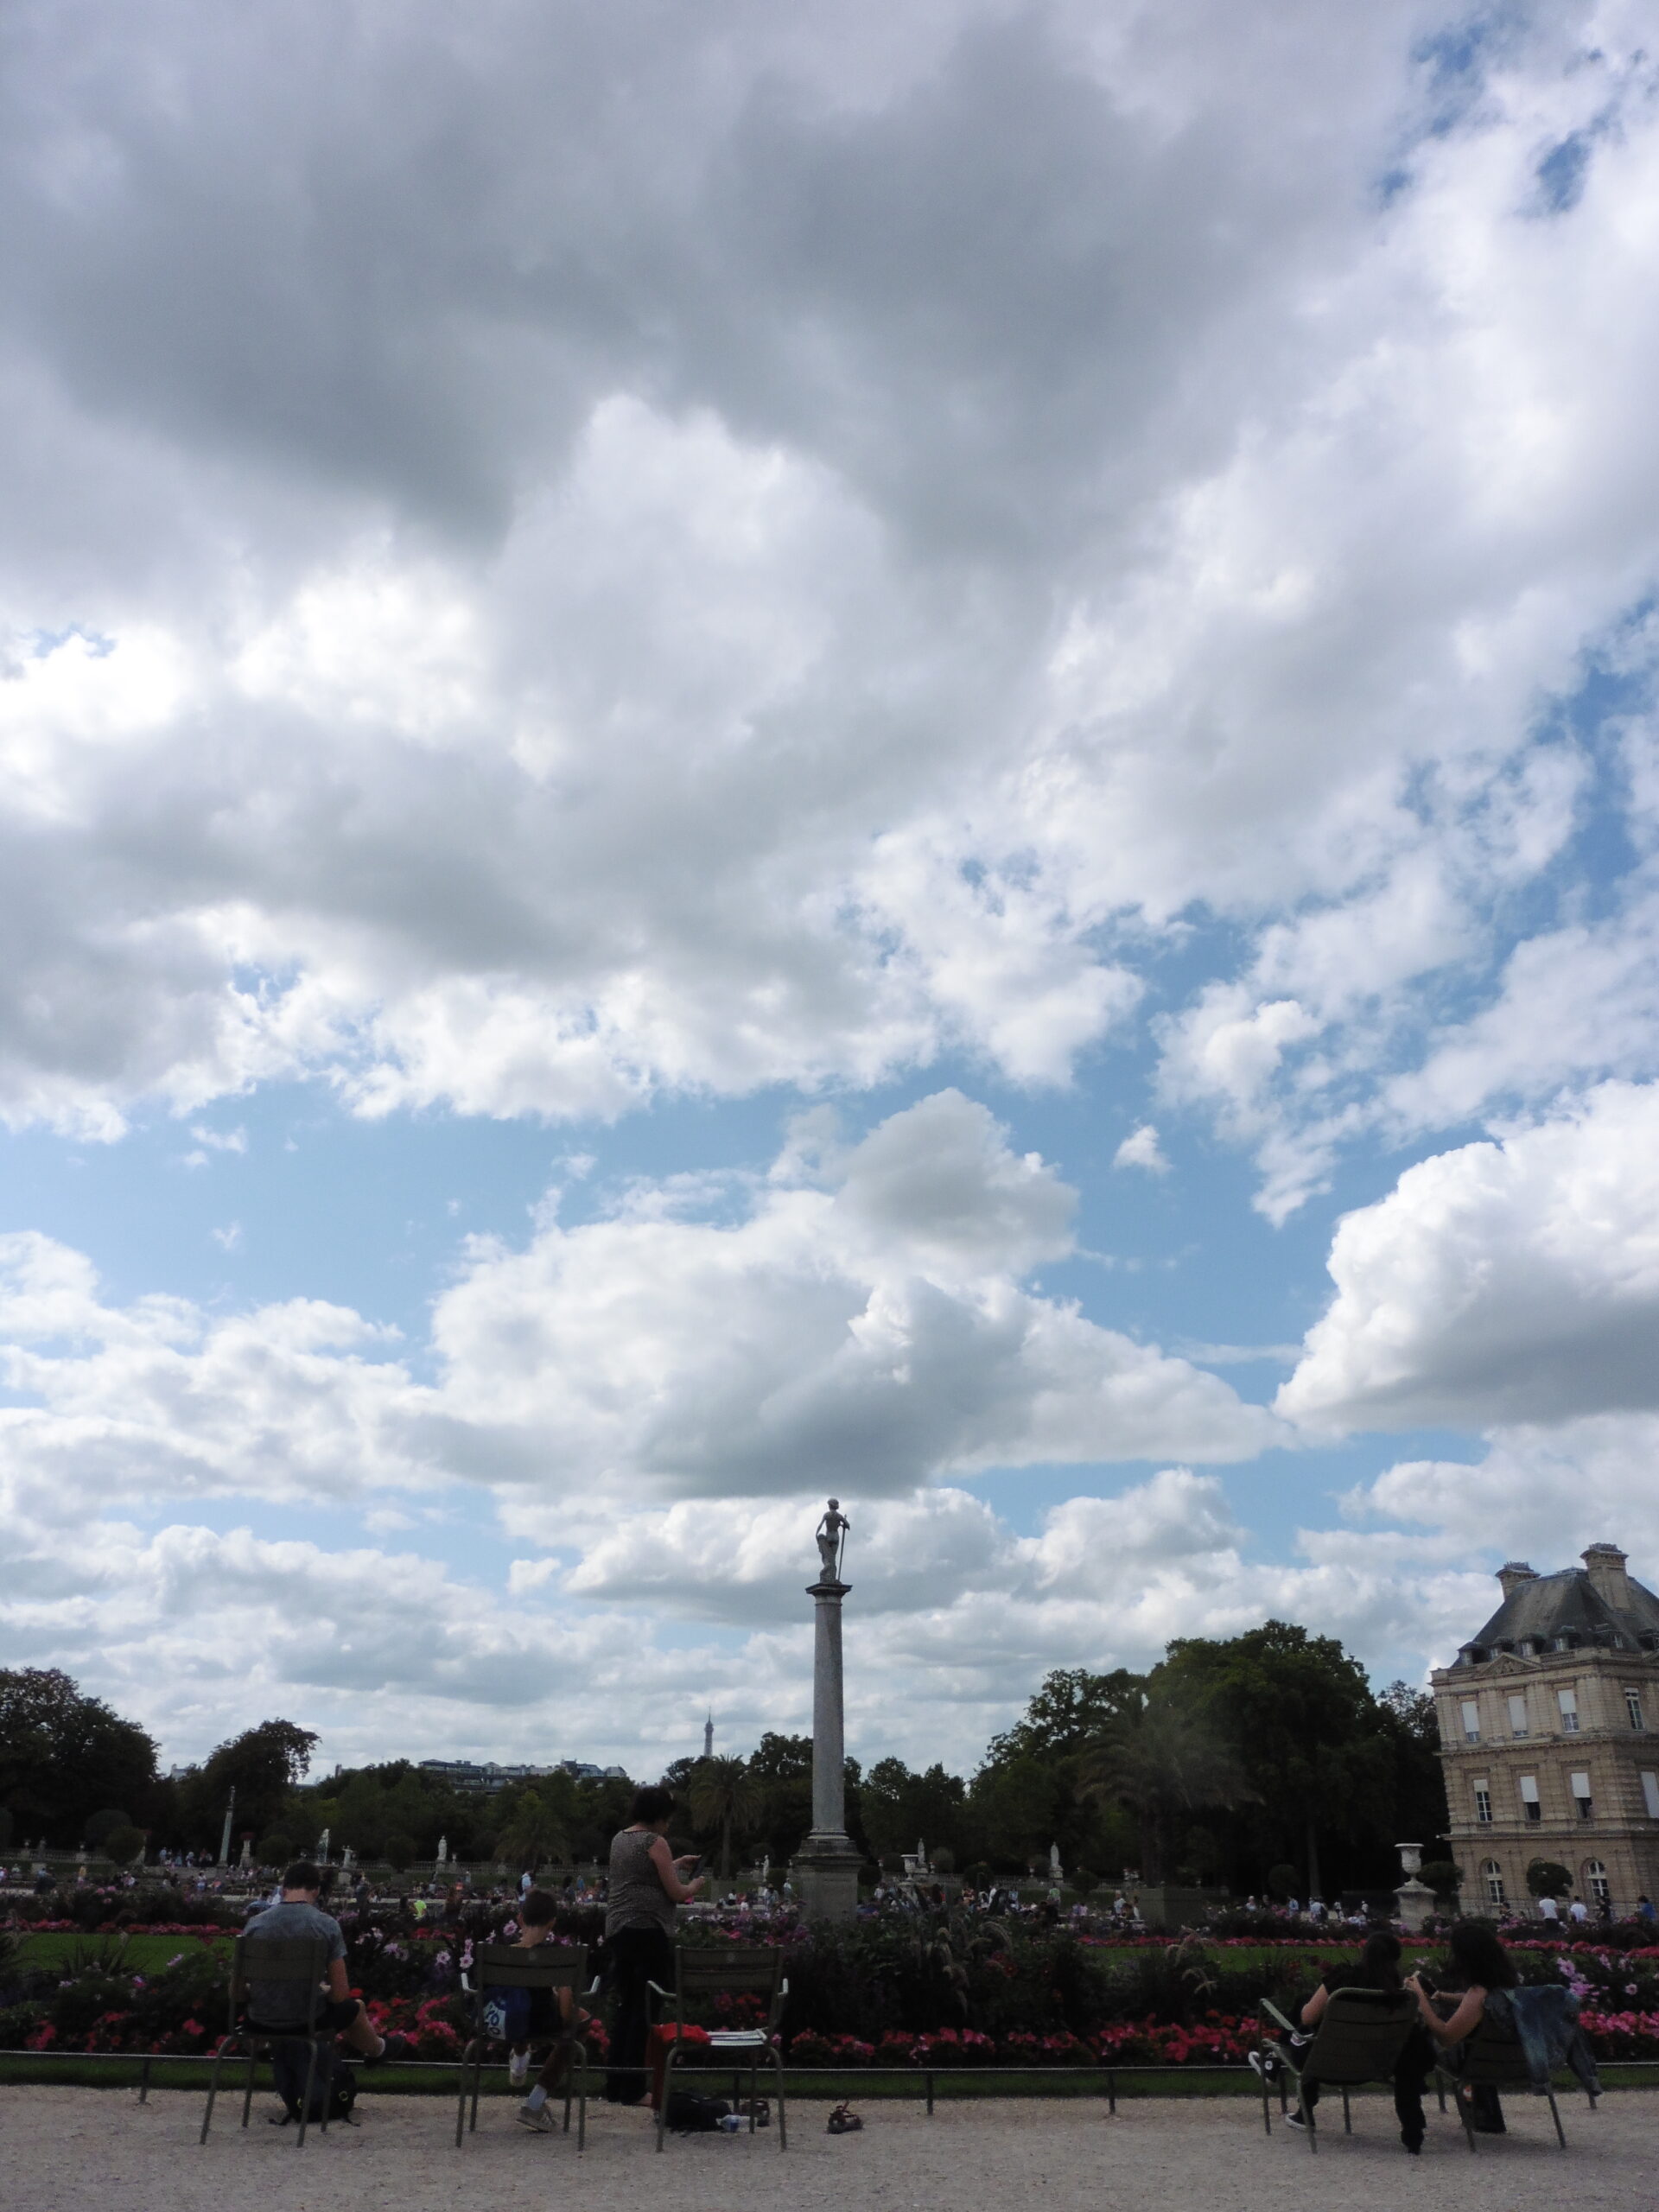 clouds in a Parisian sky